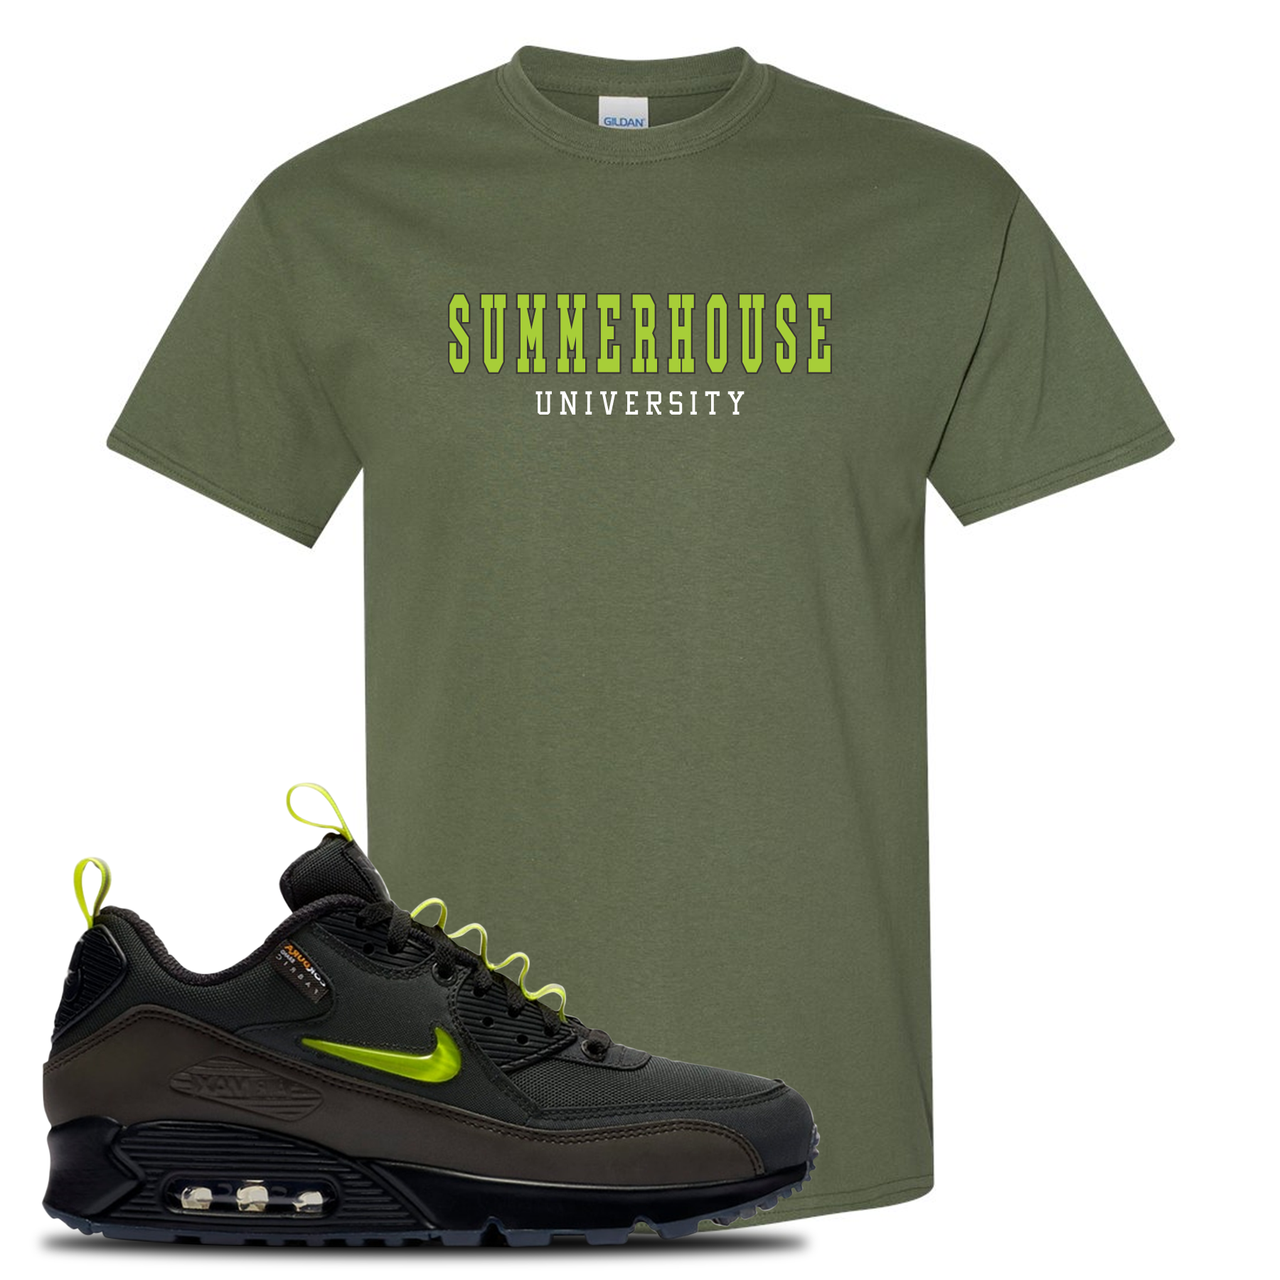 The Basement X Air Max 90 Manchester Summerhouse University Military Green Sneaker Hook Up T-Shirt